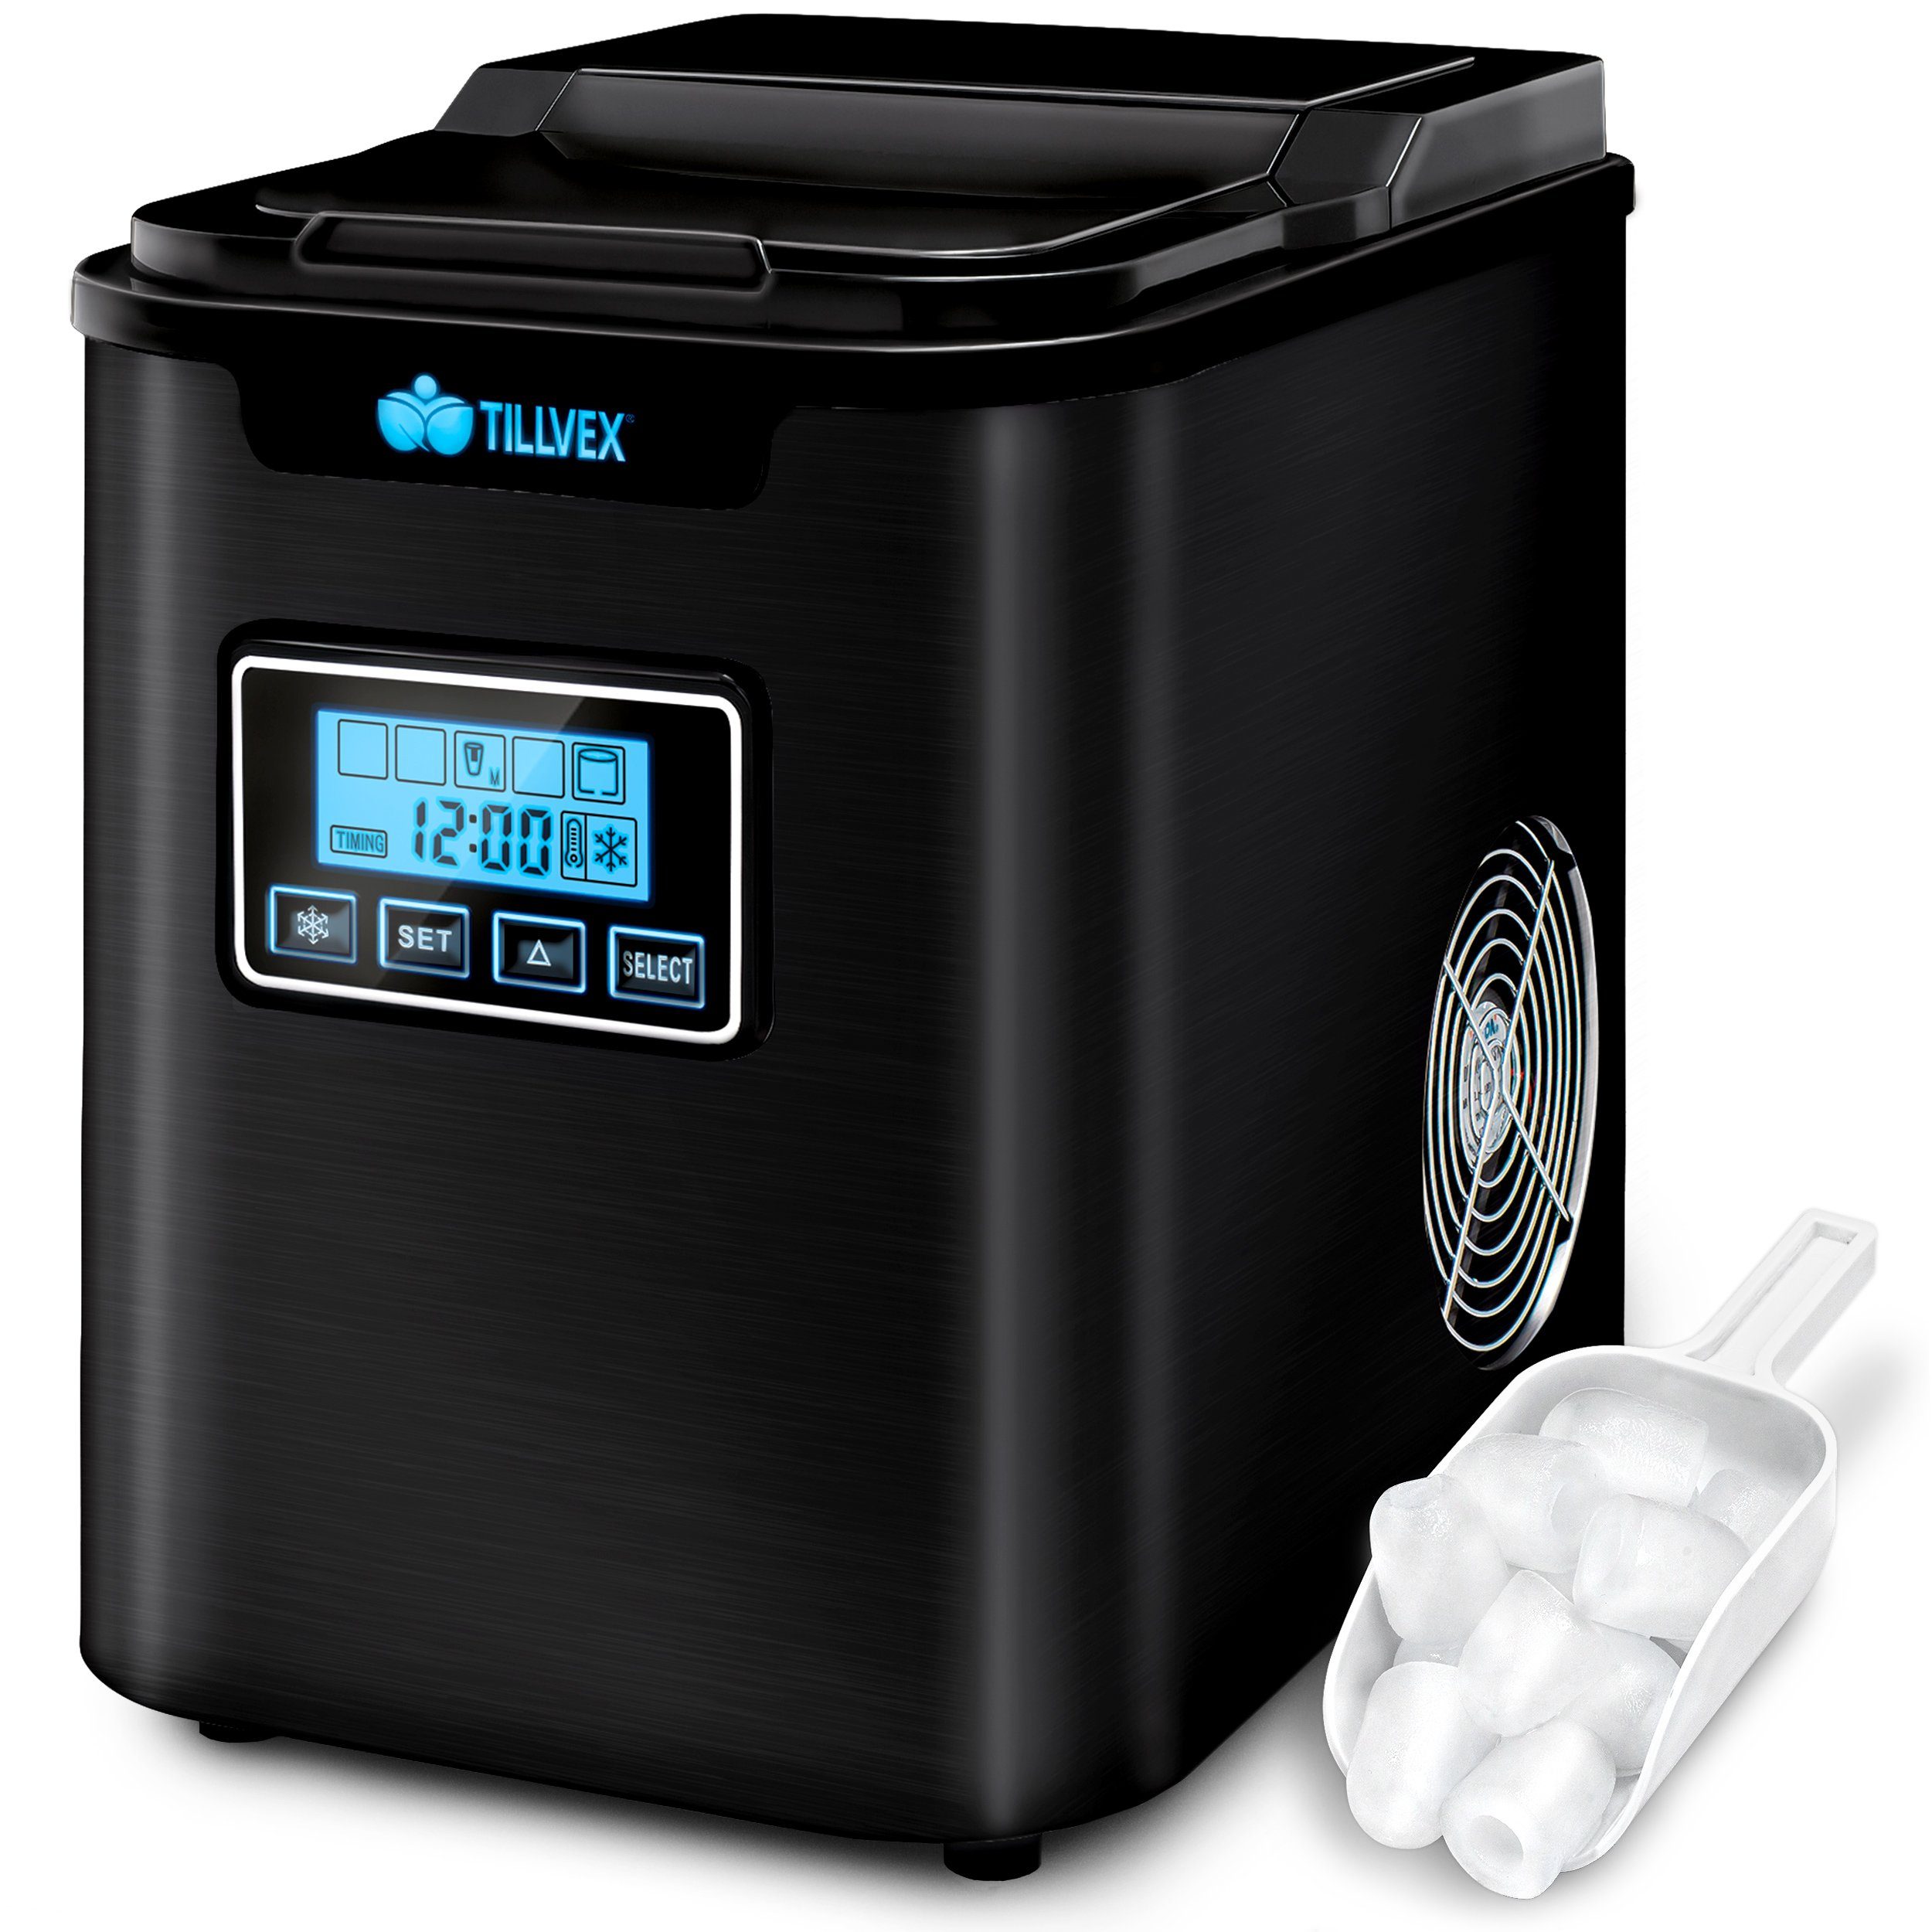 tillvex Eiswürfelmaschine Ice Maker 12 kg - 24 h Edelstahl, Mit Timer & LCD- Display, 2,2L Wassertank & Selbstreinigungsfunktion, 3 Eiswürfel Größen